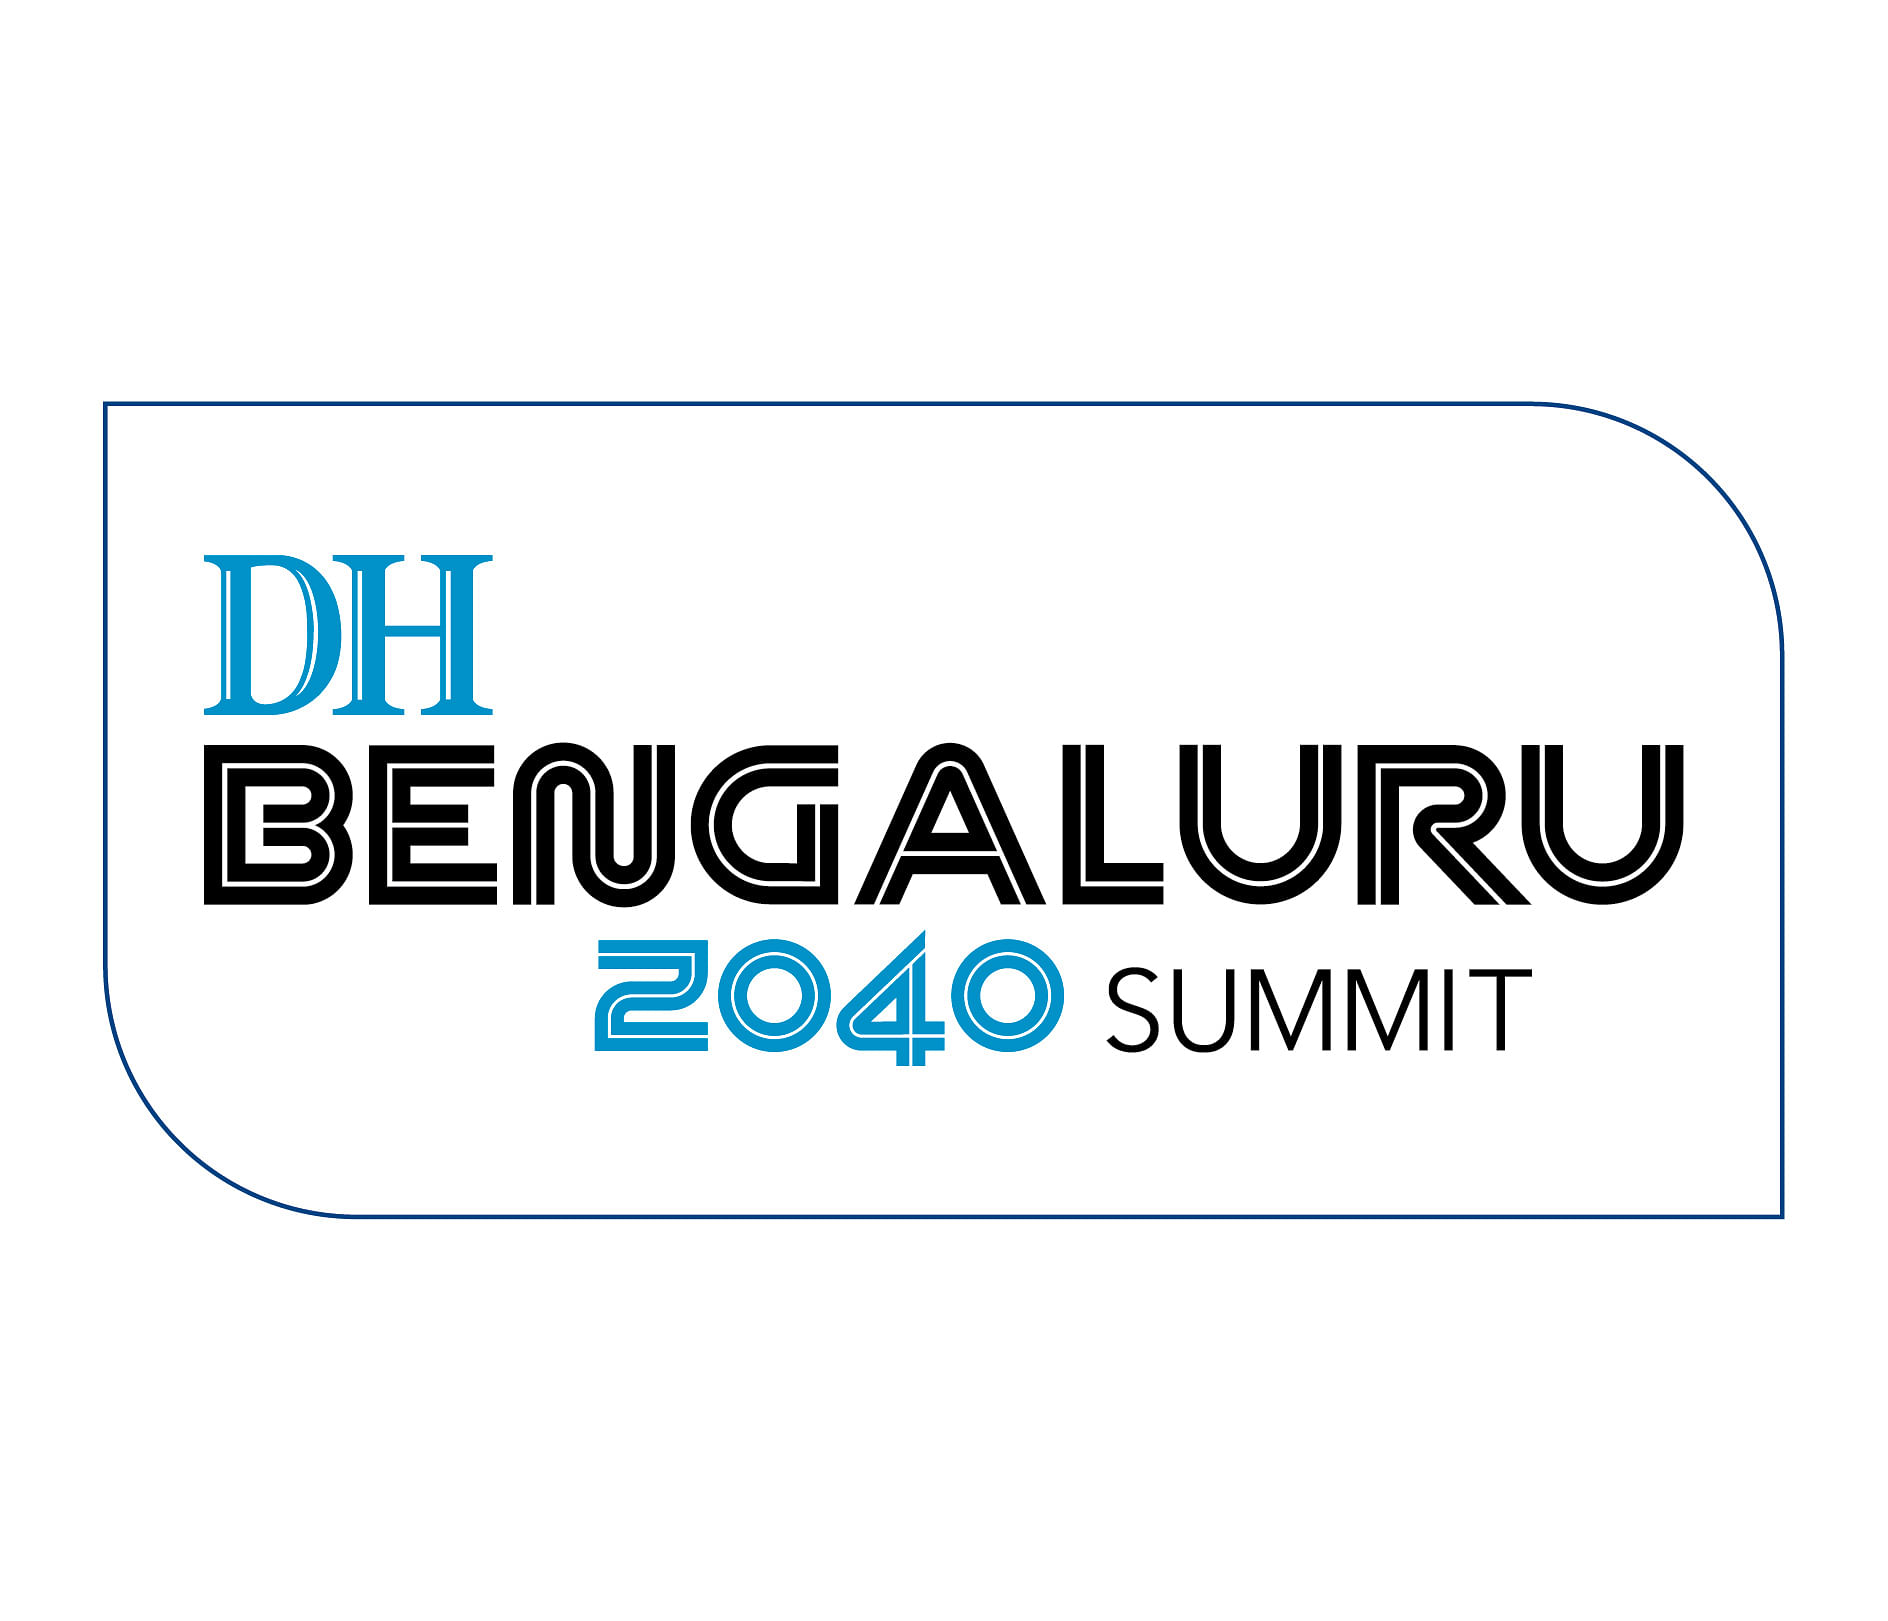 Bengaluru 2040 Summit |  WEEKEND FILM CHALLENGE